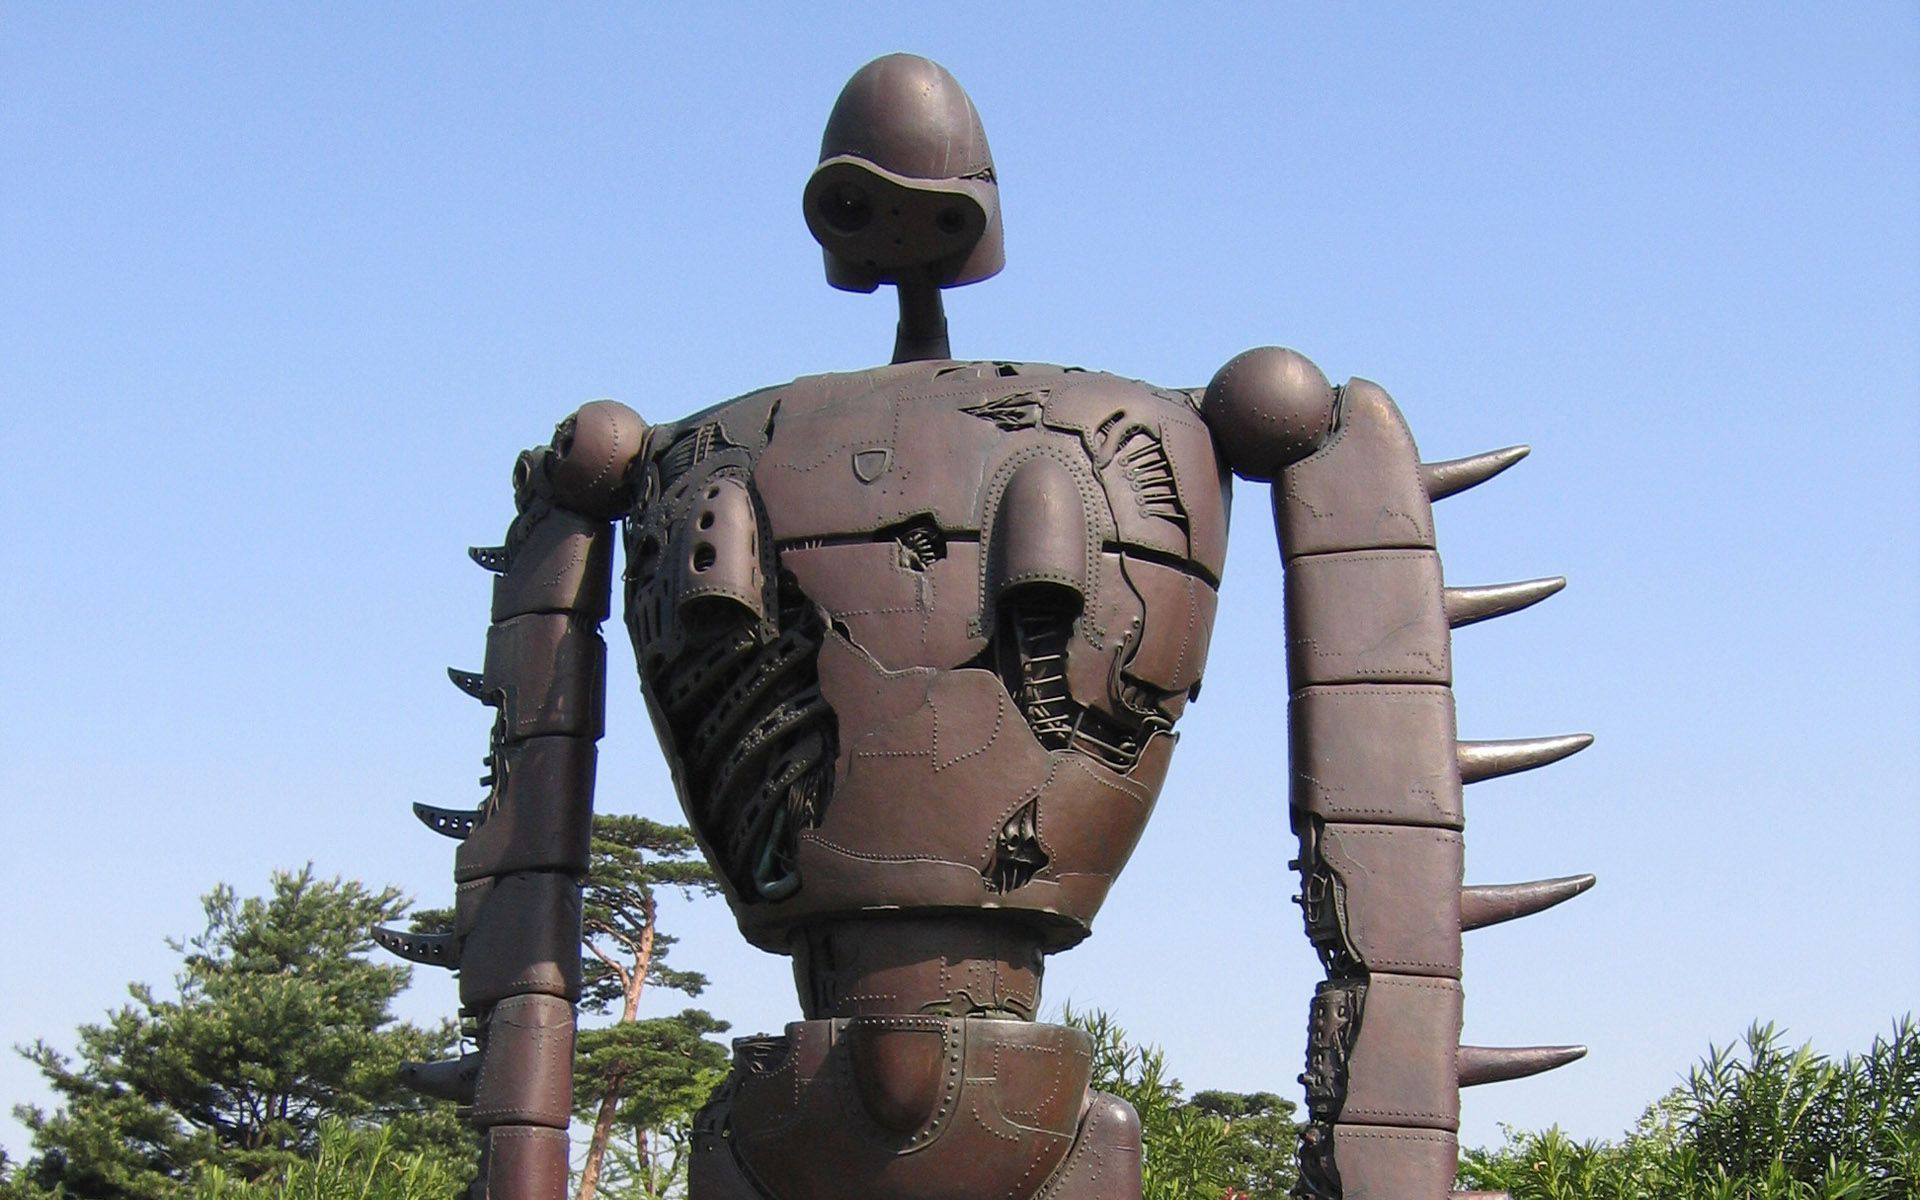 Скачать обои бесплатно Скульптура, Робот, Сделано Человеком картинка на рабочий стол ПК